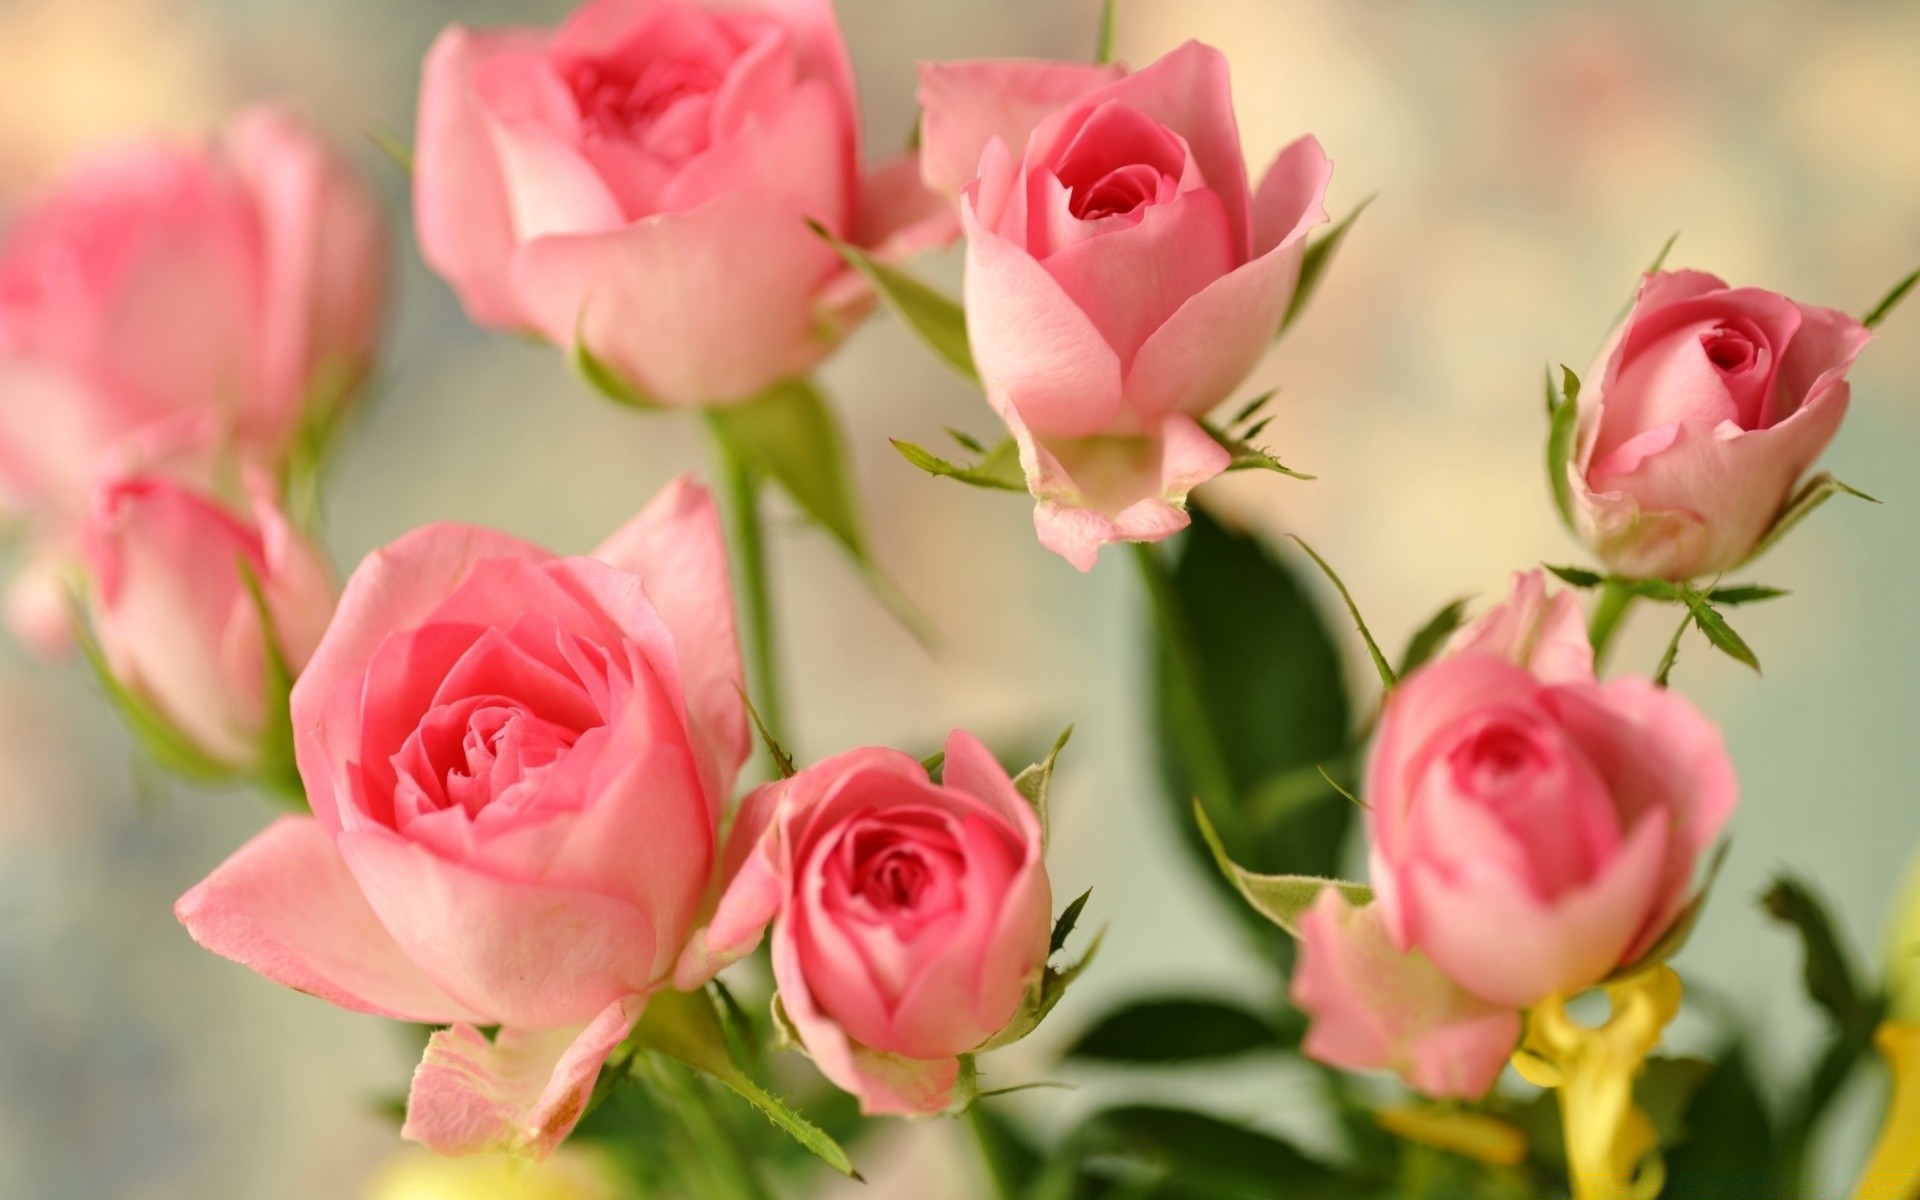 романтика роза любовь цветок букет свадьба цветочные лепесток природа лист флора дружище романтический блюминг кластер юбилей подарок пастель день рождения